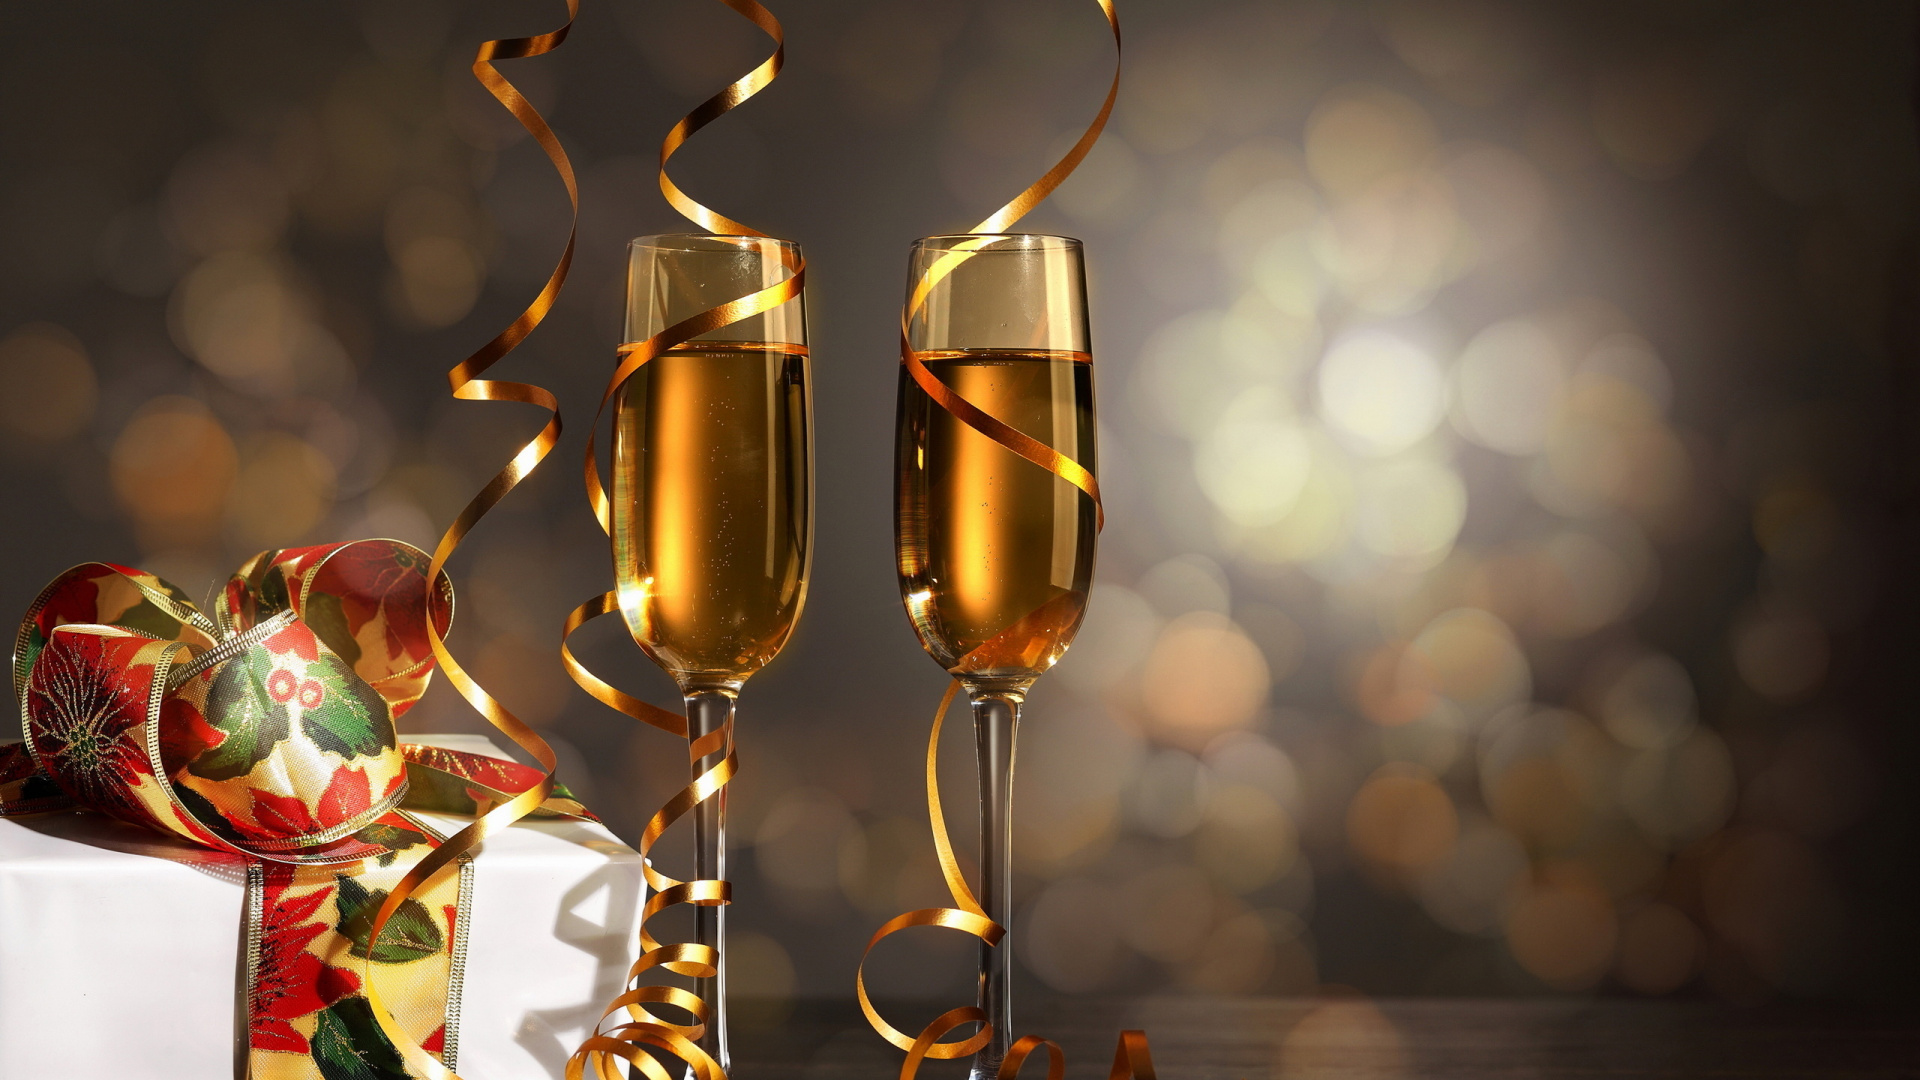 香槟, 新的一年, 葡萄酒, 生日, 高脚杯香槟 壁纸 1920x1080 允许